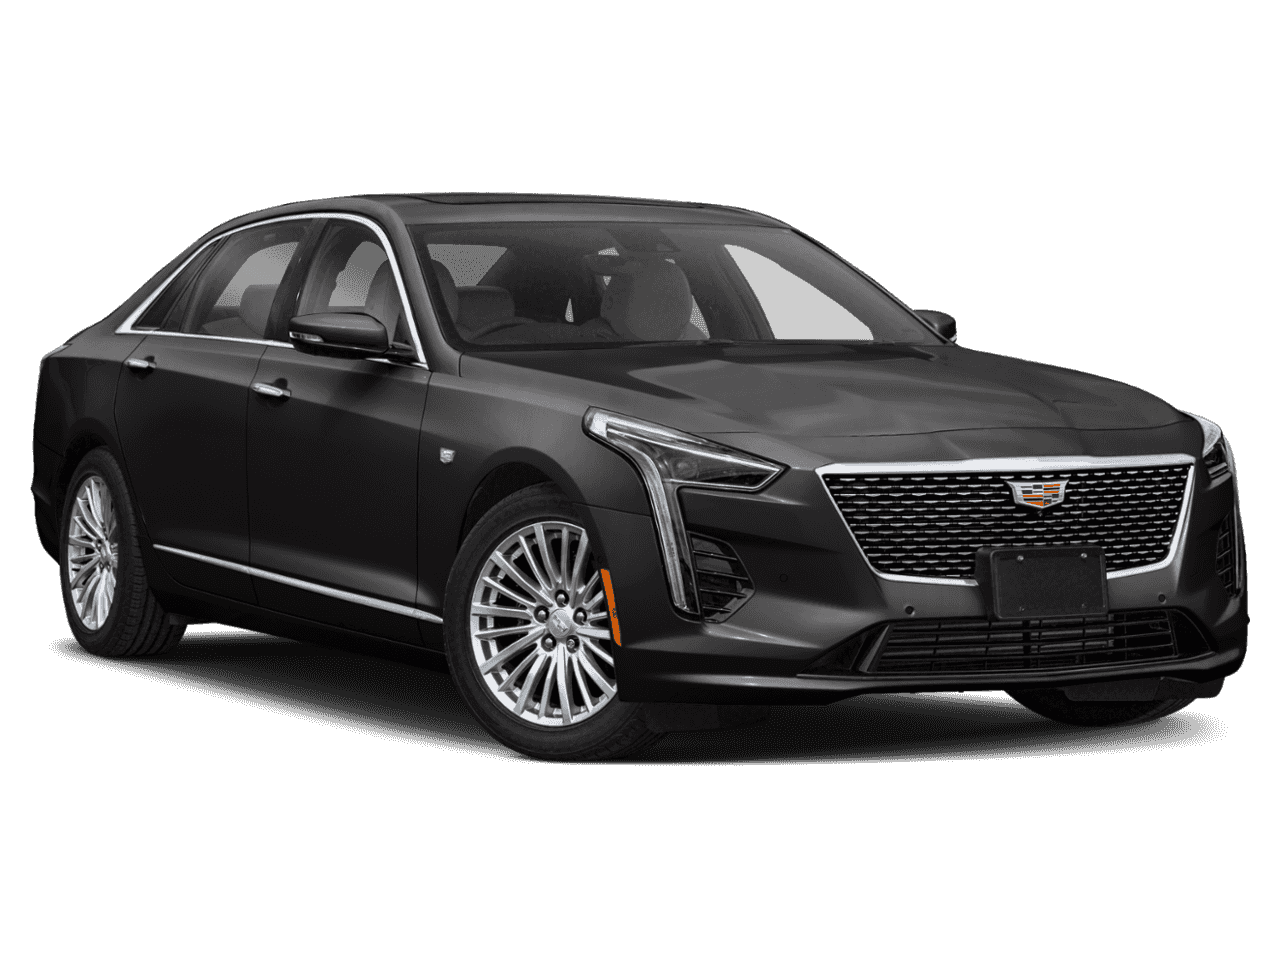 New 2022 Cadillac Ct6 Premium Luxury Interior, Price, Awd Cadillac